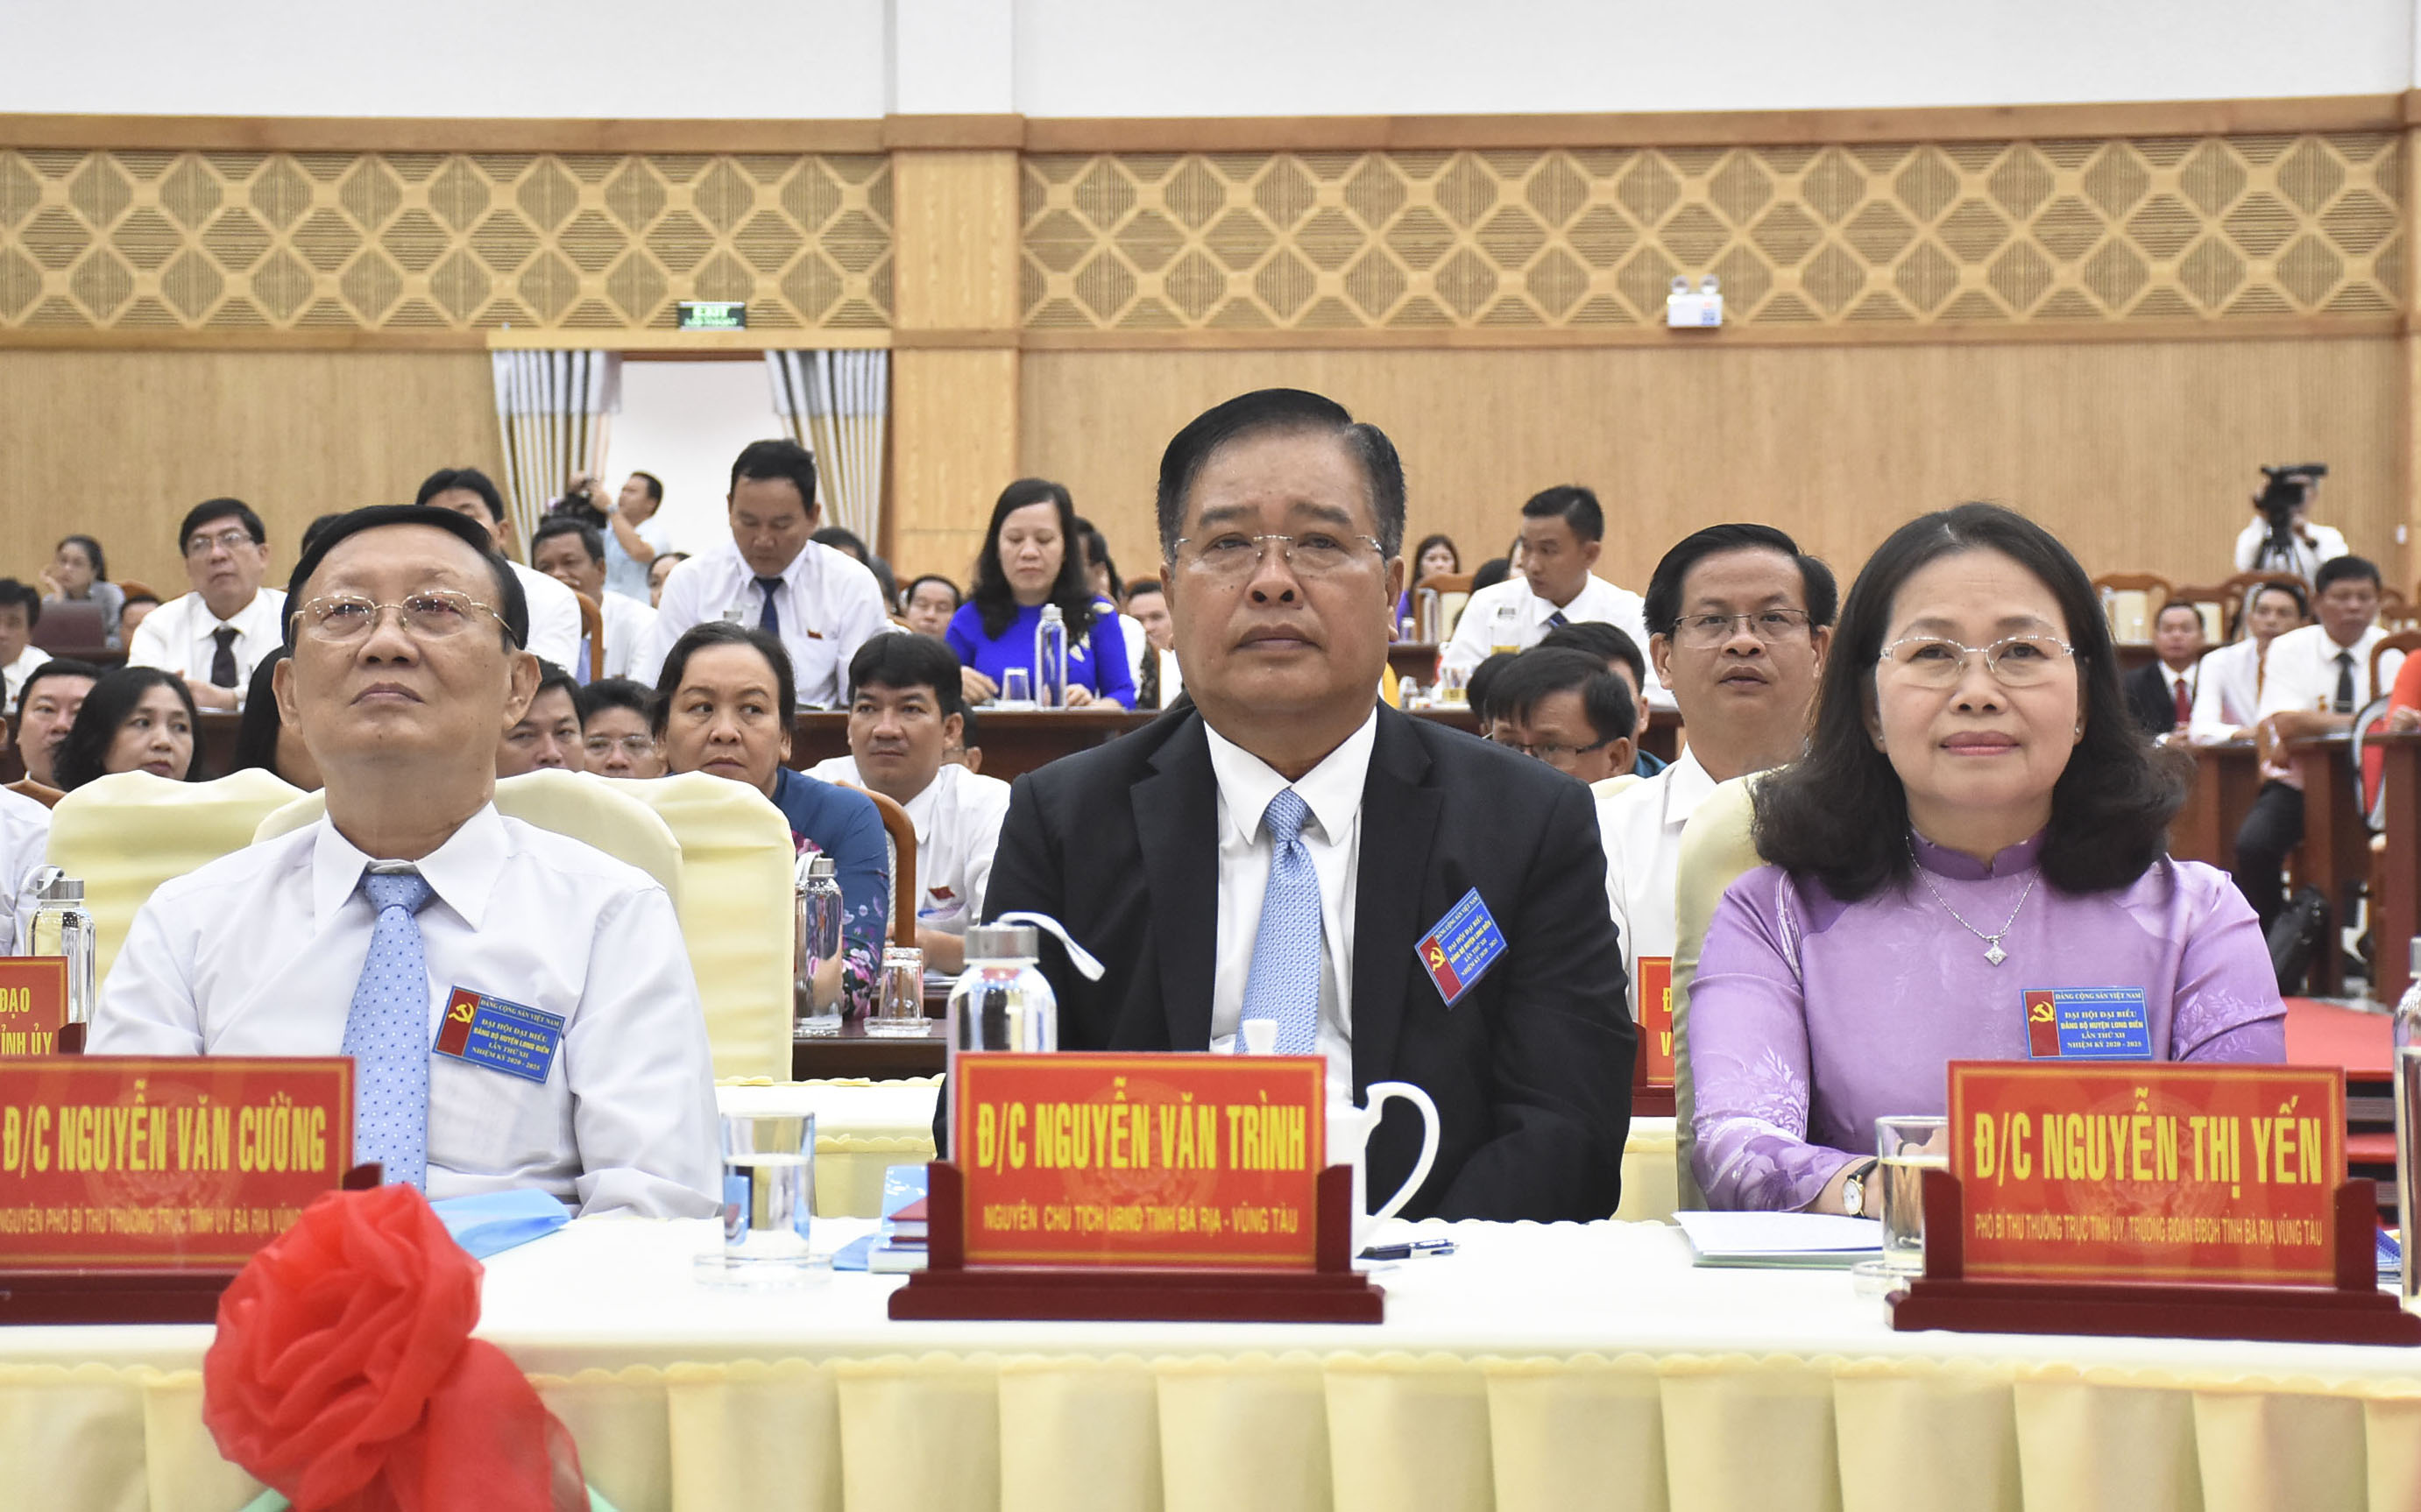 Đồng chí Nguyễn Thị Yến, Phó Bí thư Thường trực Tỉnh ủy, Trưởng Đoàn ĐBQH tỉnh cùng các đồng chí nguyên lãnh đạo tỉnh dự Đại hội.